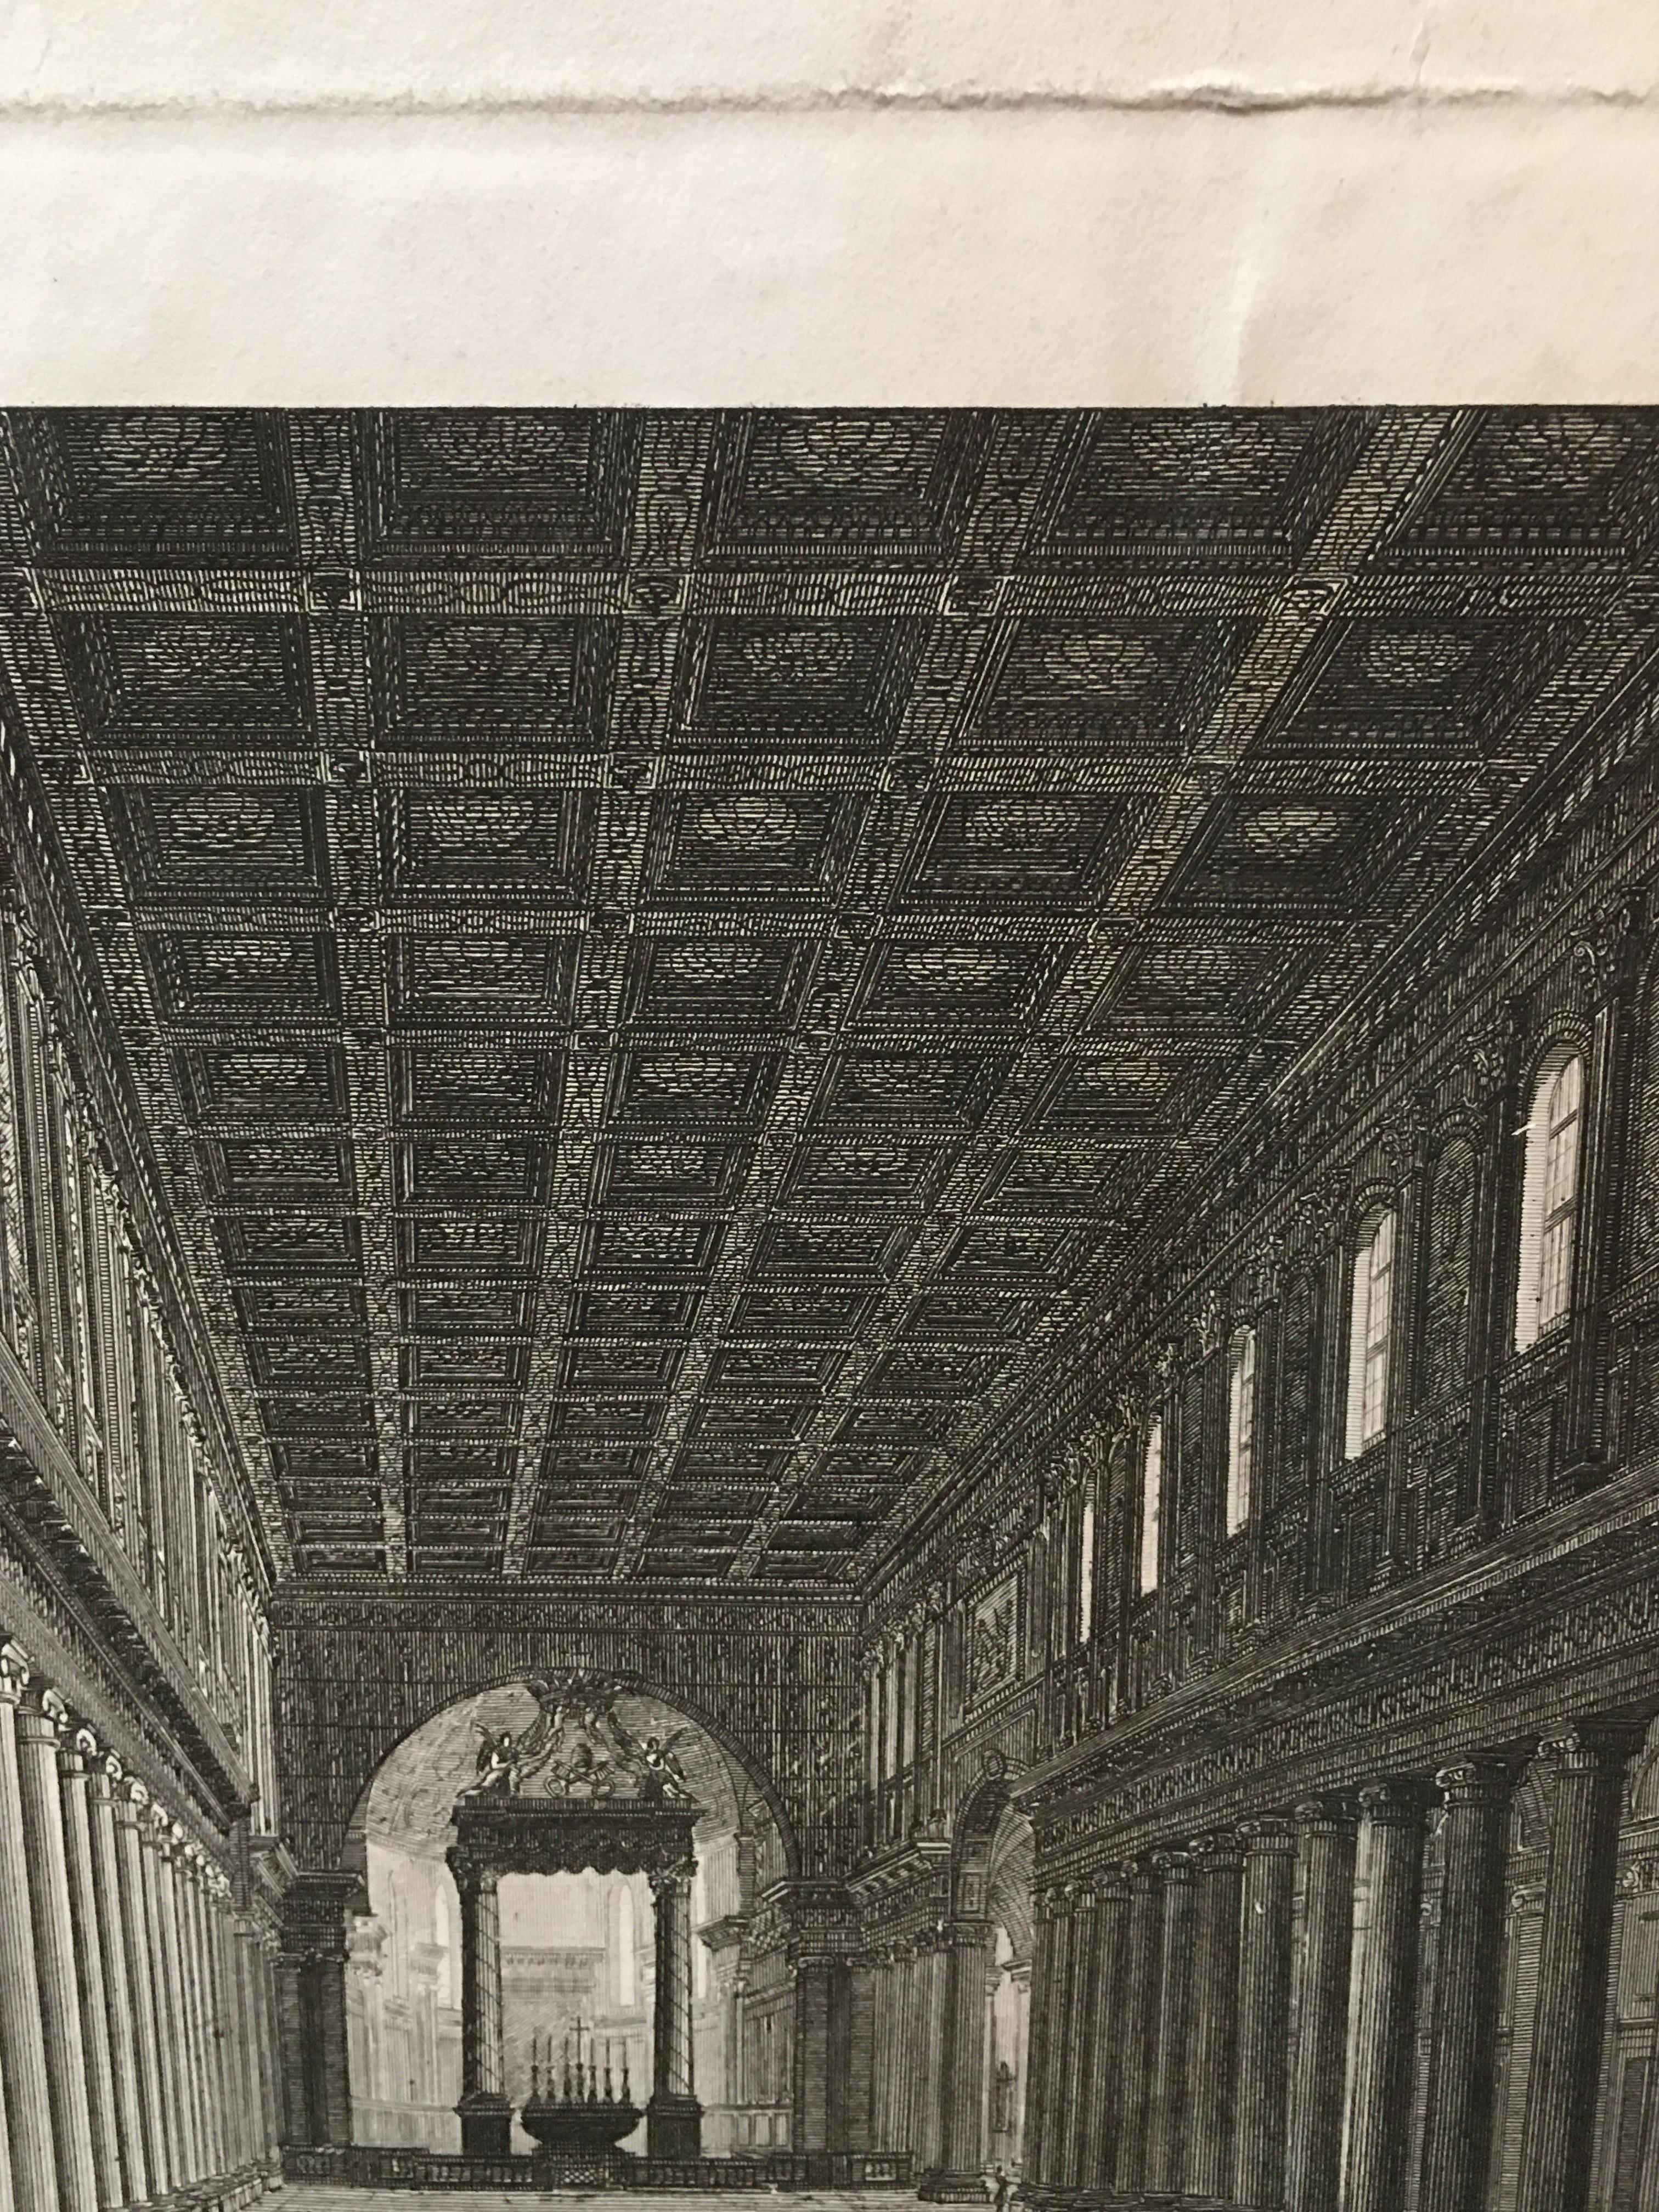 19th Century Period Engraving Interior View of Santa Maria Maggiore in Rome